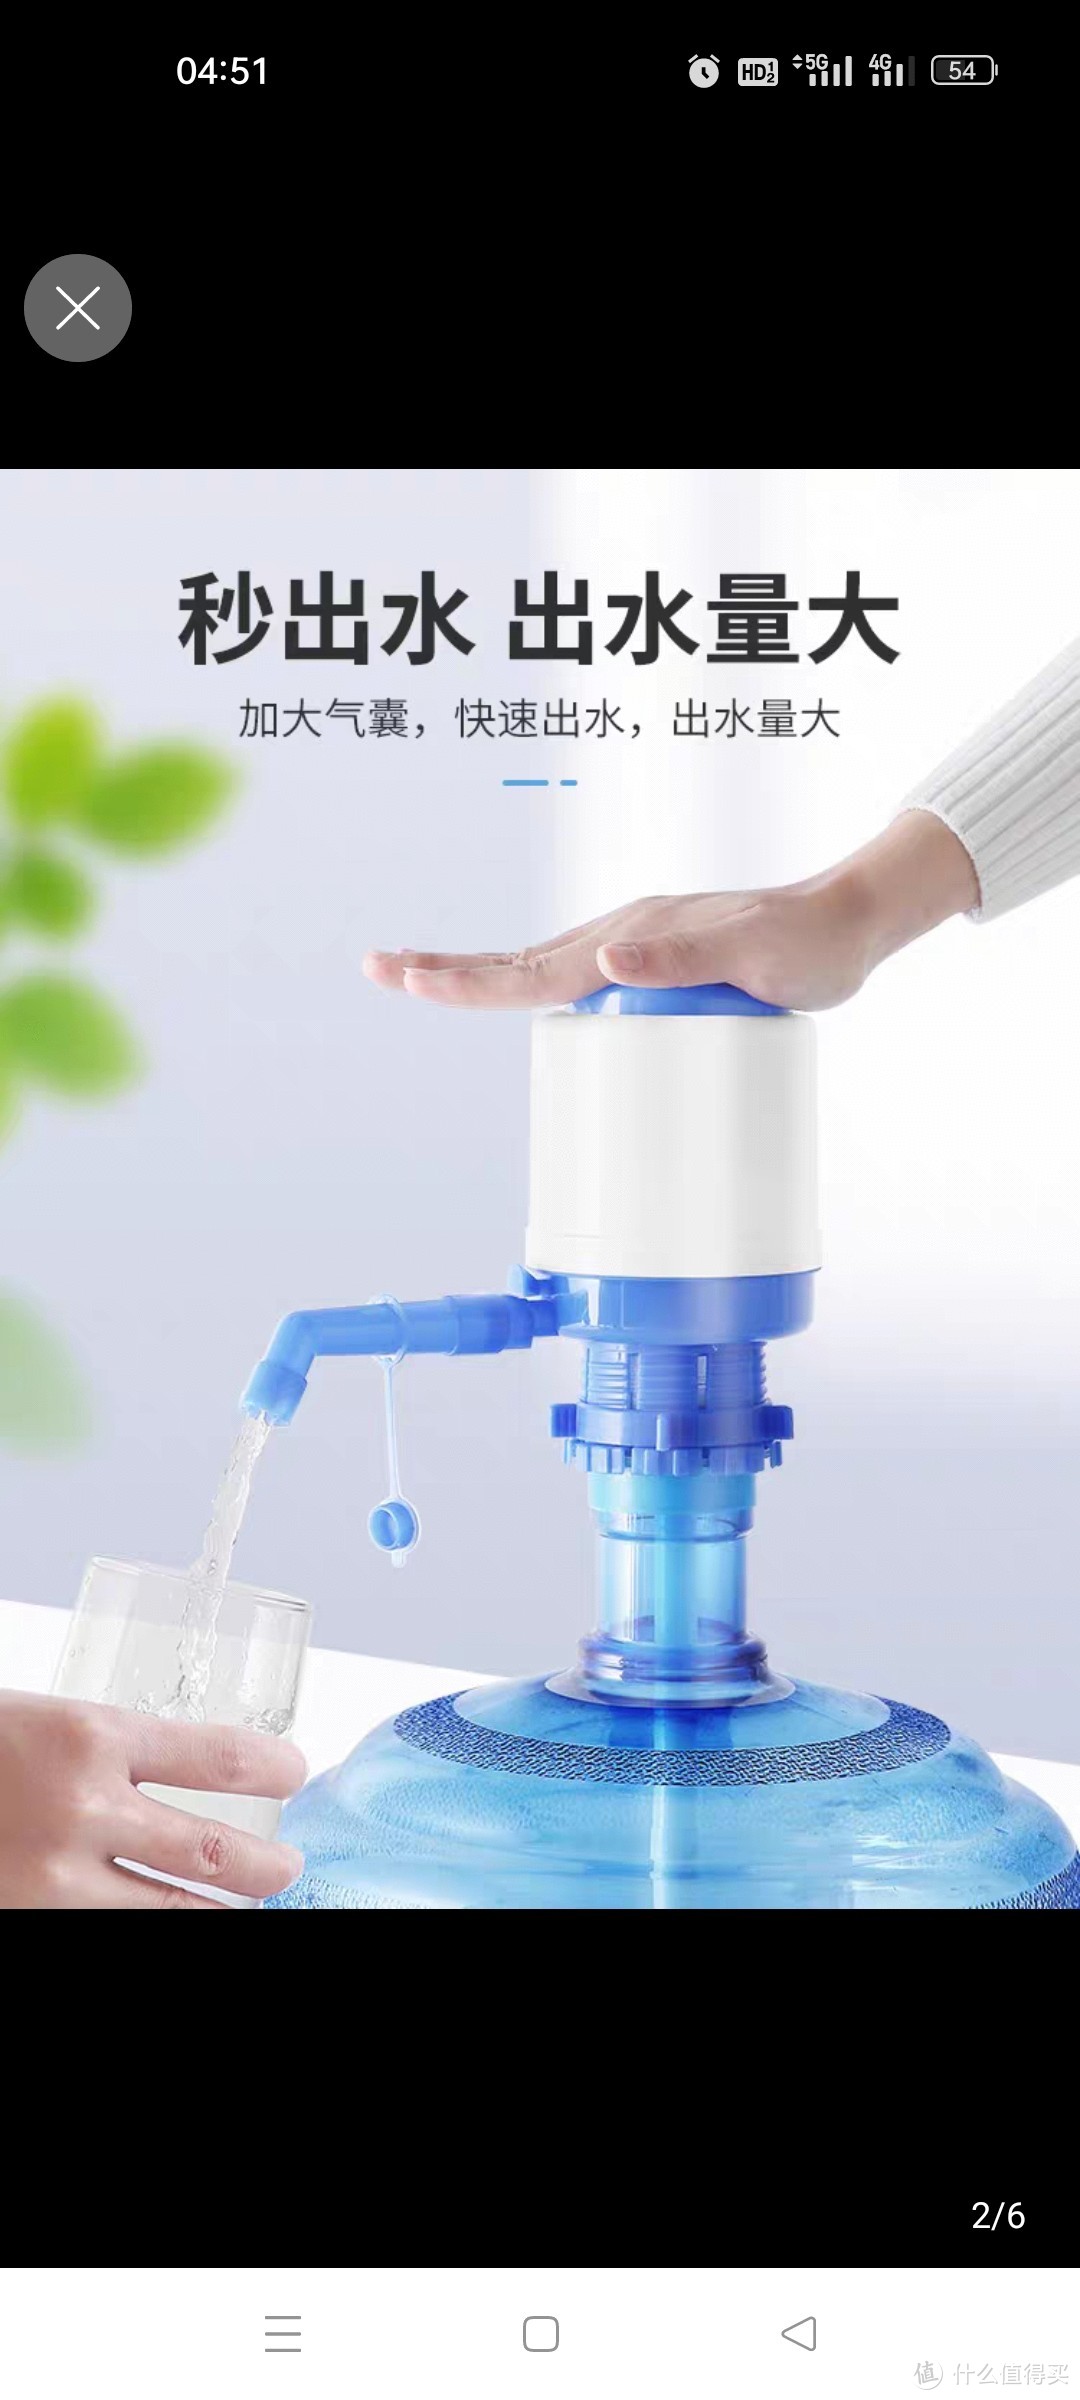 手压式桶装水纯净水抽水器水桶按压抽水饮水机压水器家用吸出水器